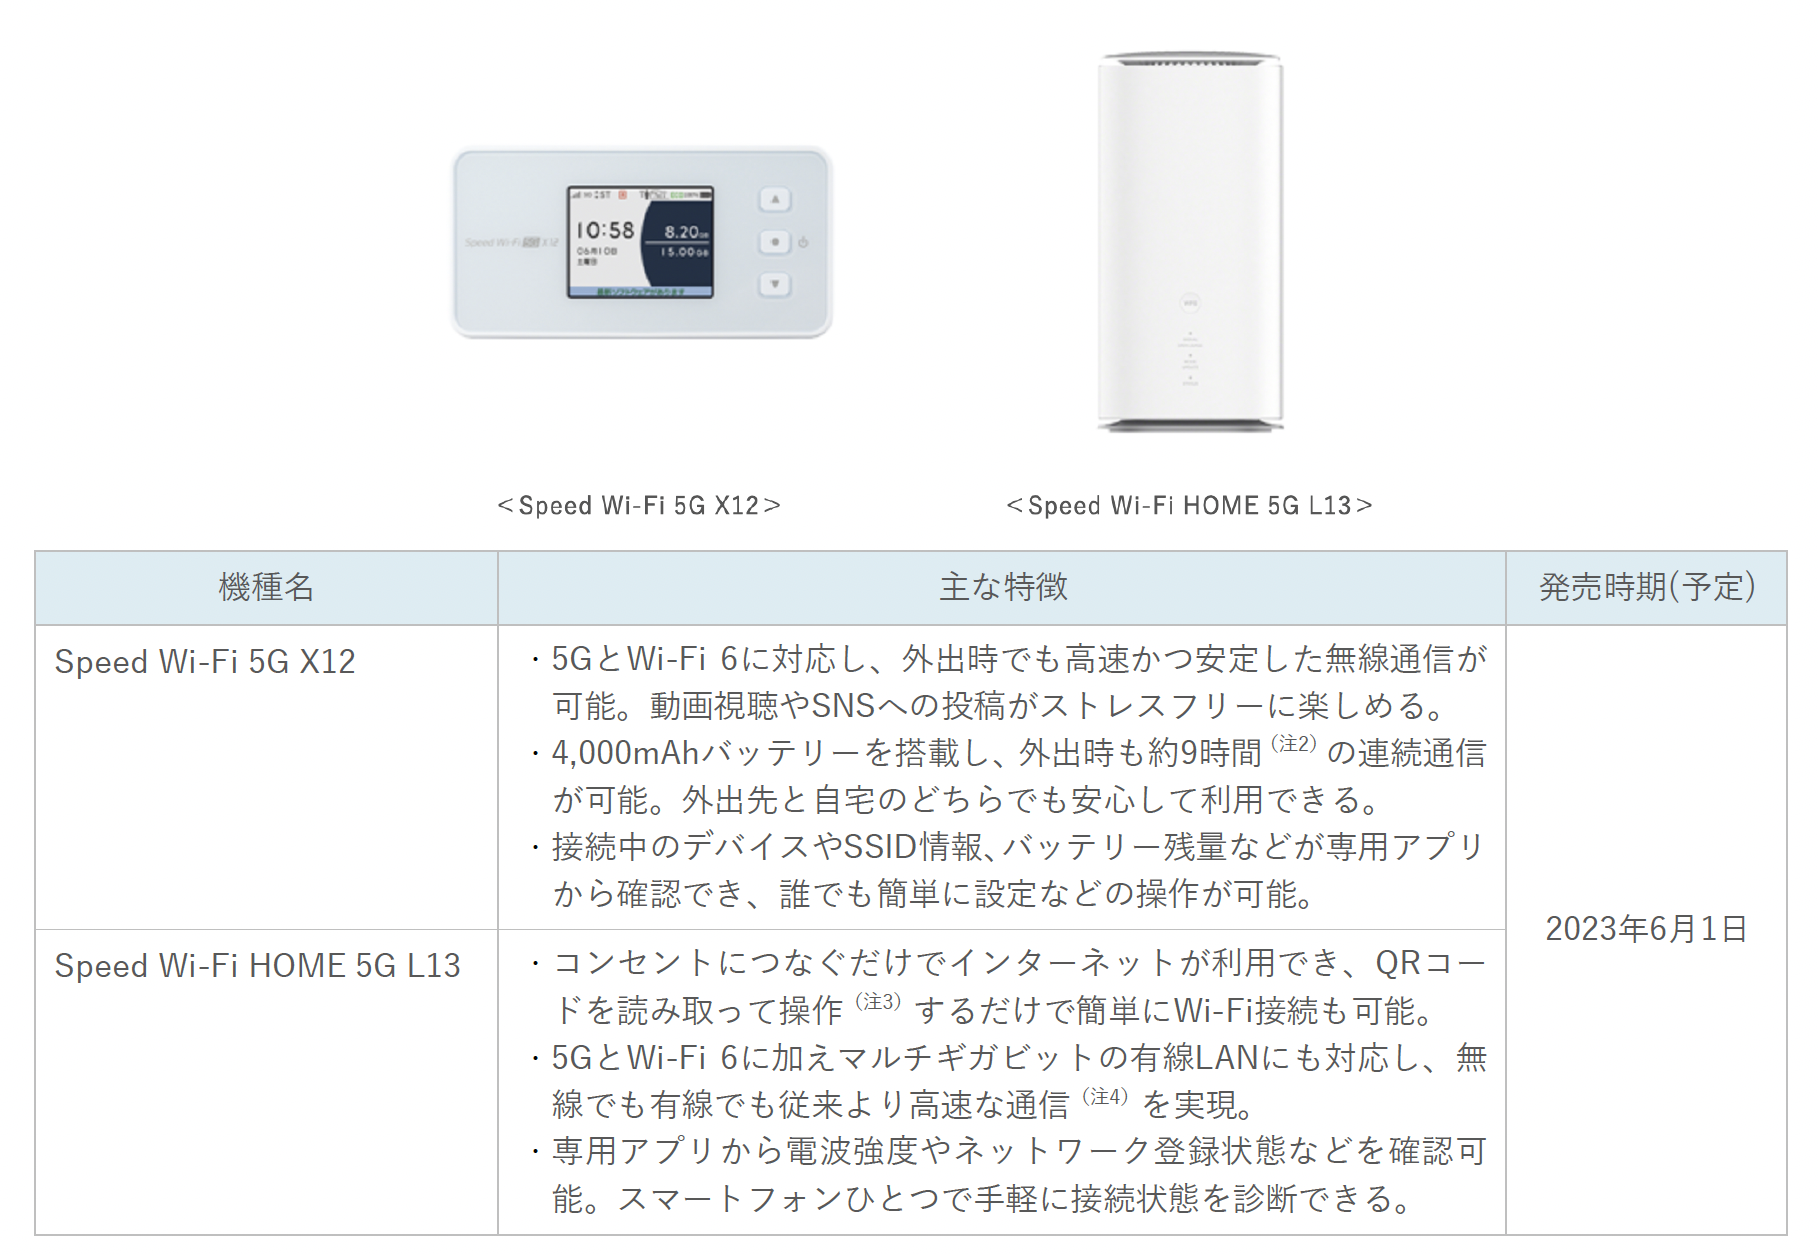 モバイルルーター「Speed Wi-Fi 5G X12」、ホームルーター「Speed Wi